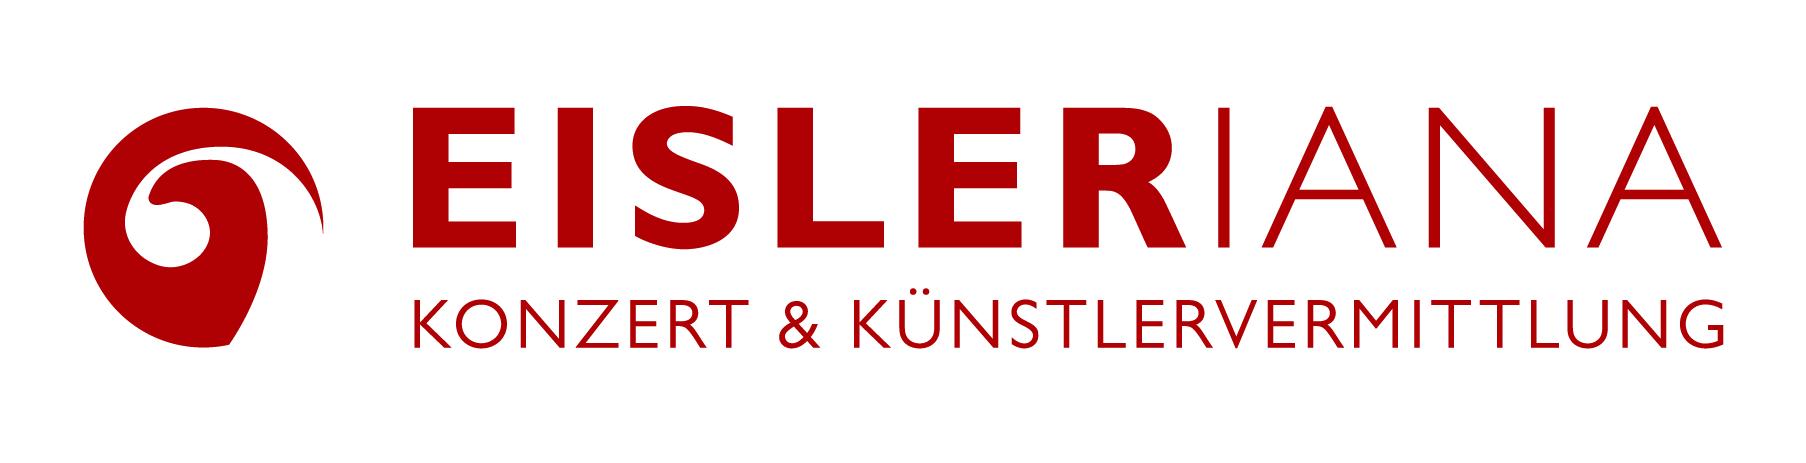 Logo Knstlervermittlung Eisleriana